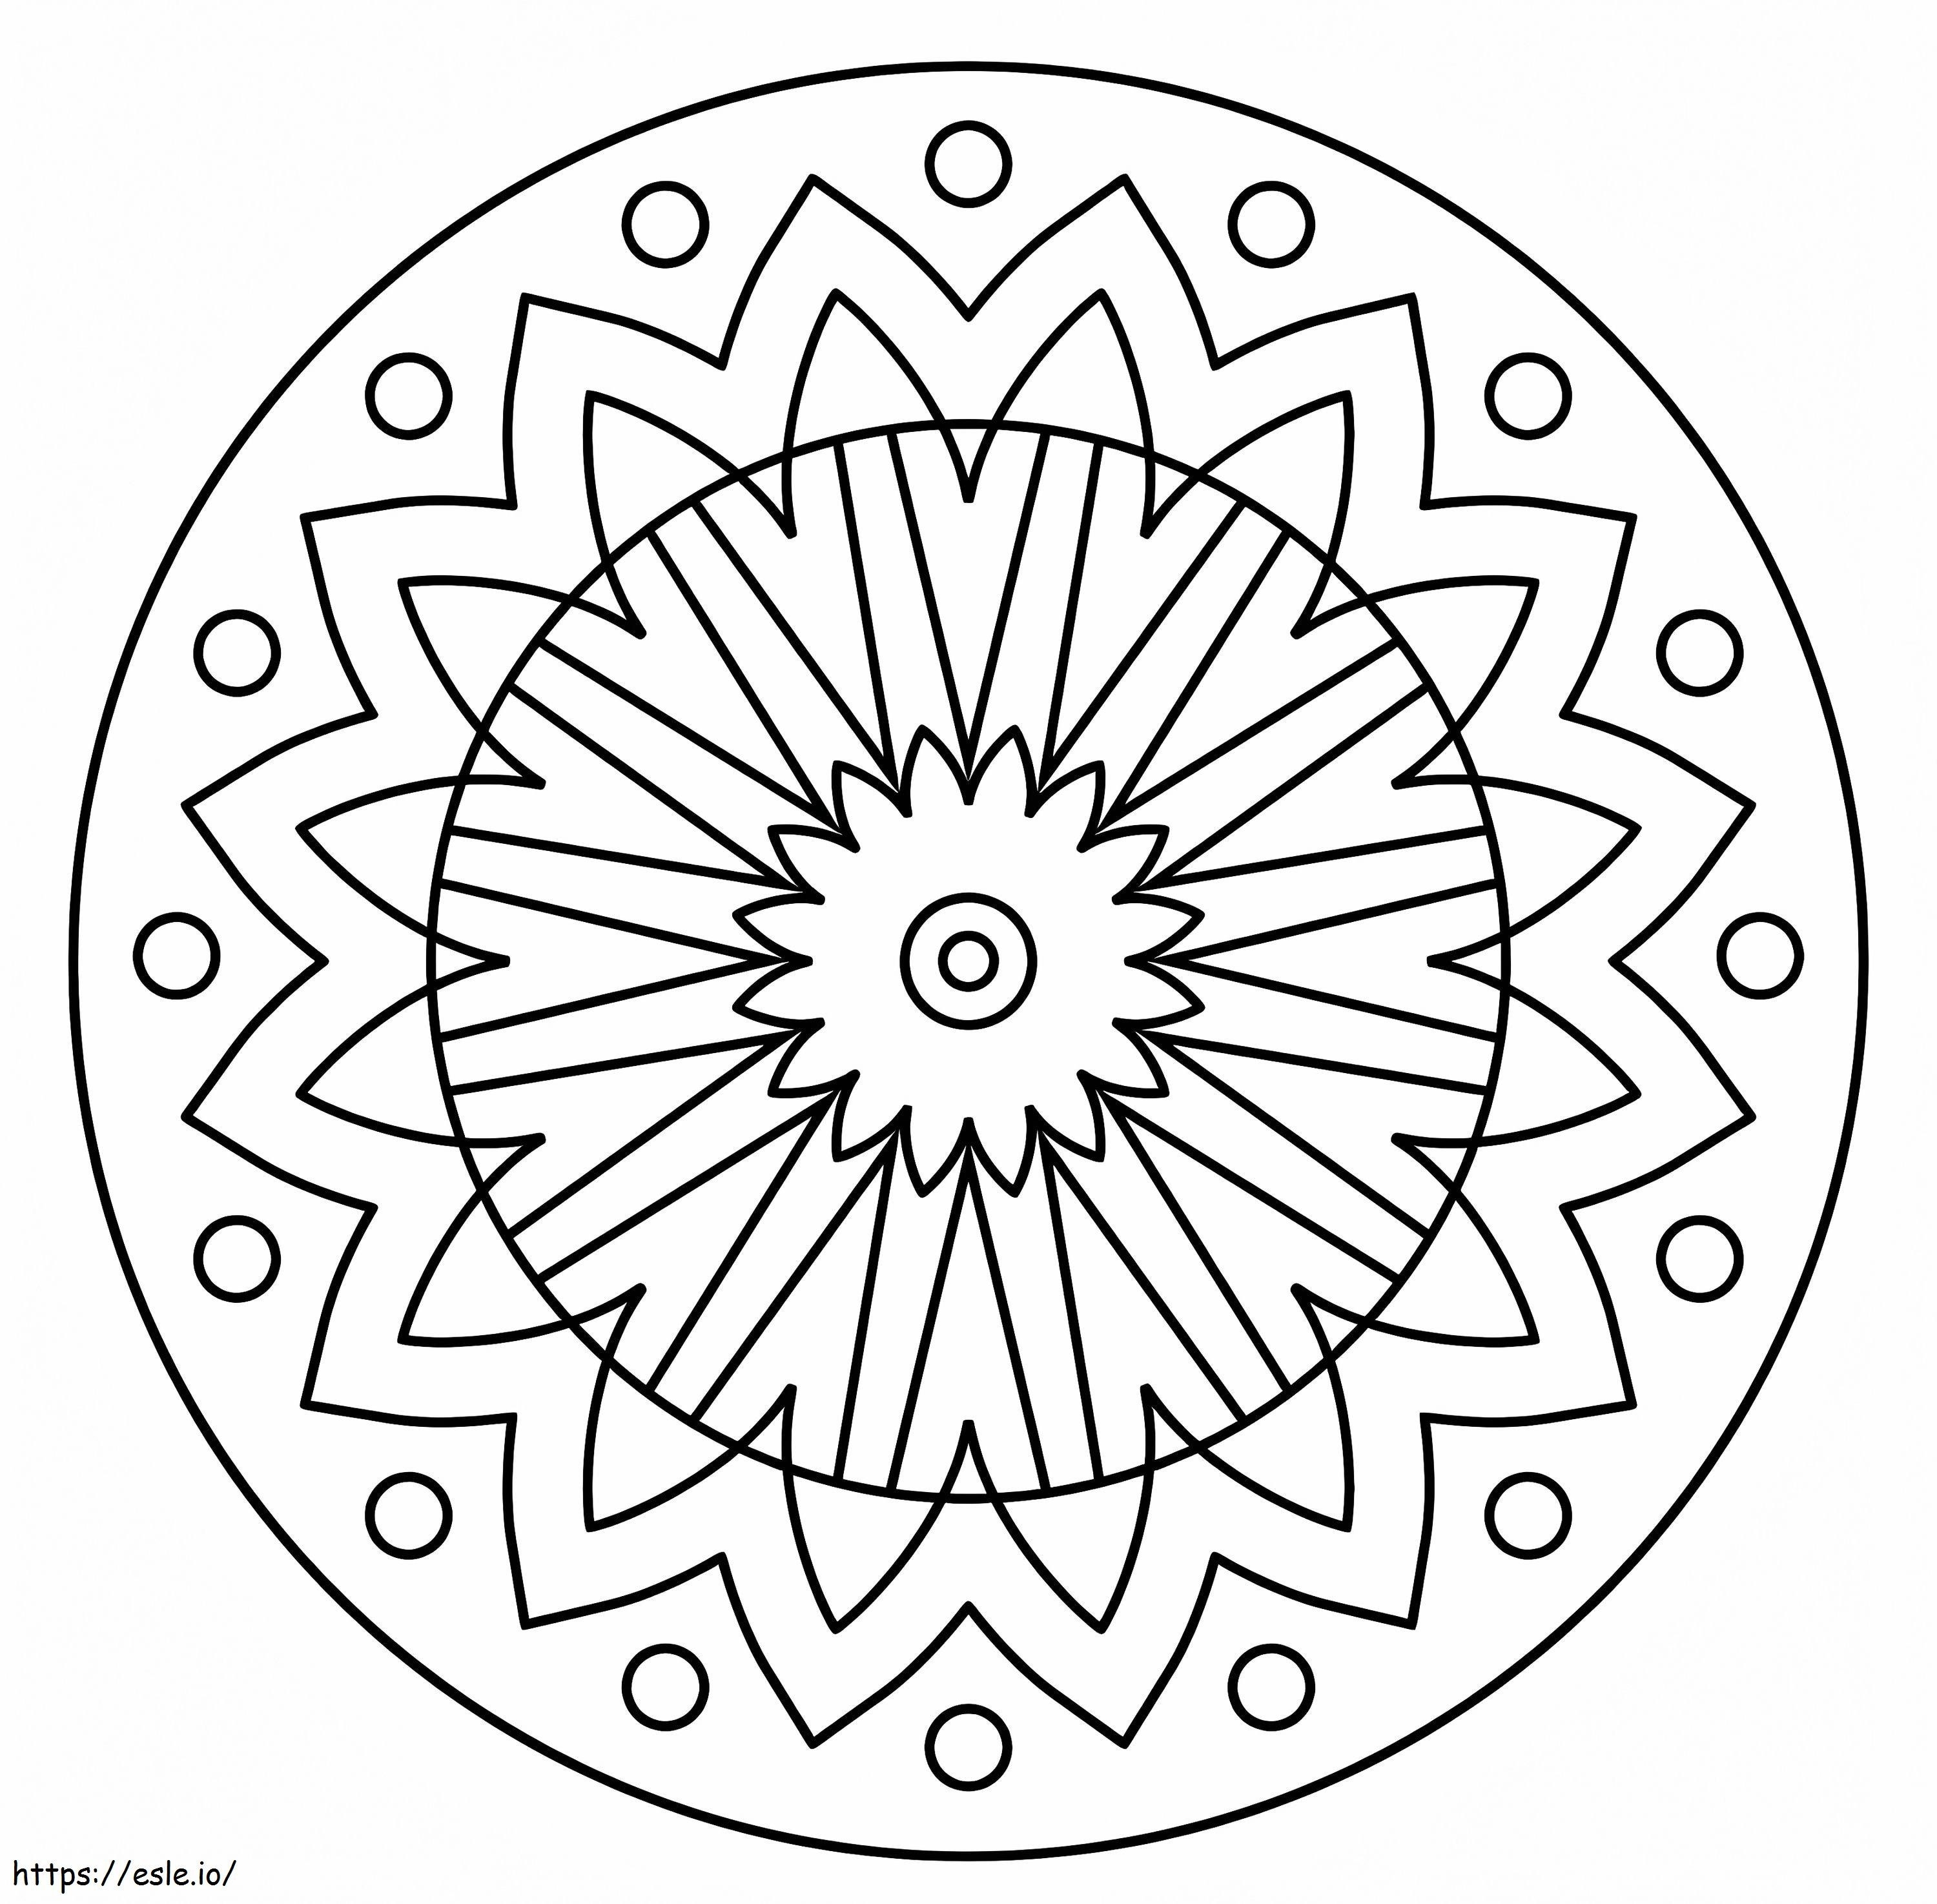 Coloriage Mandala de fleurs gratuit à imprimer dessin